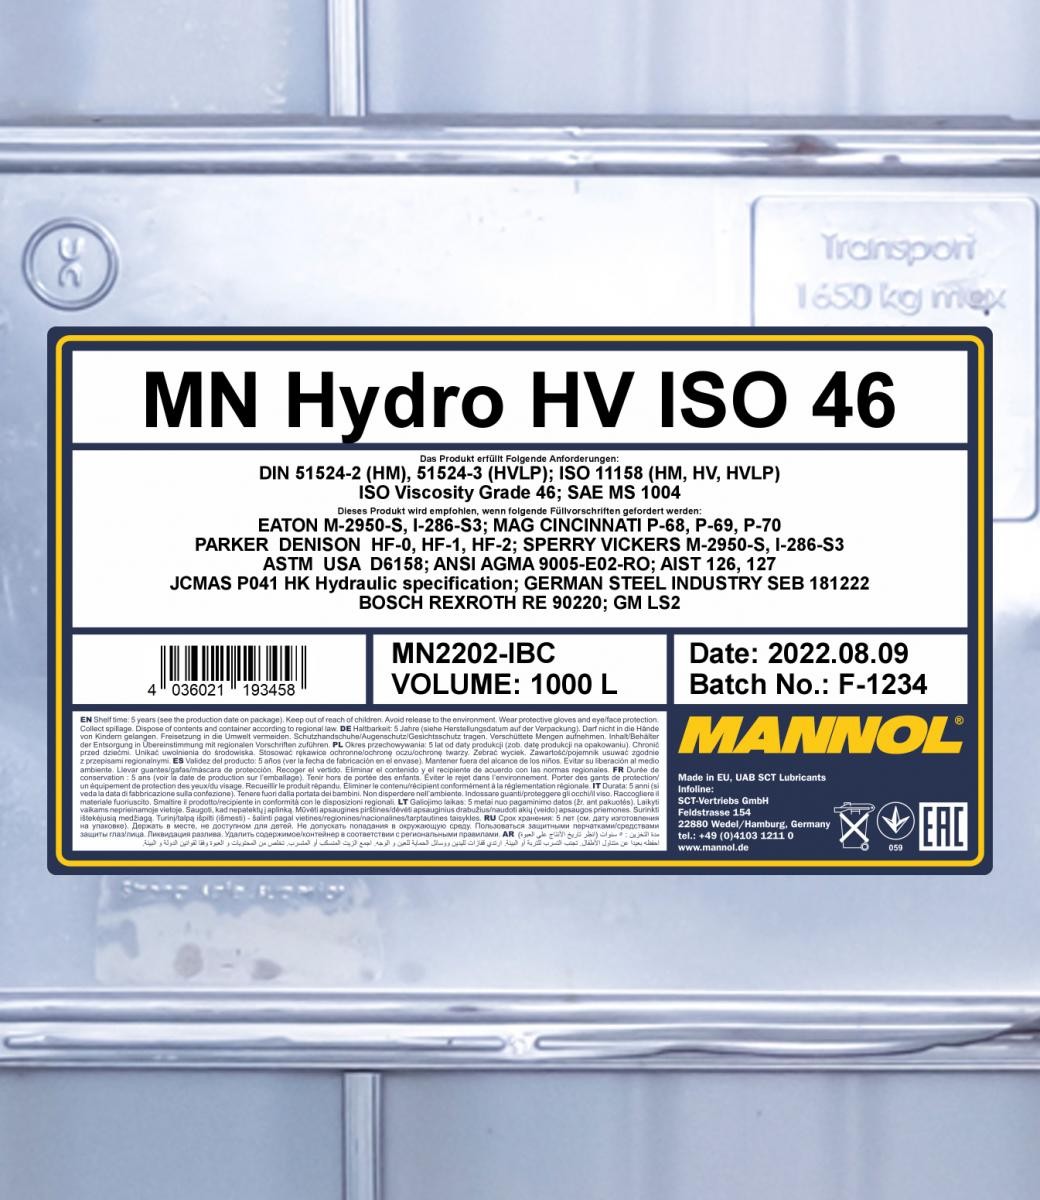 MANNOL Central Hydraulic Oil MN2202-IBC